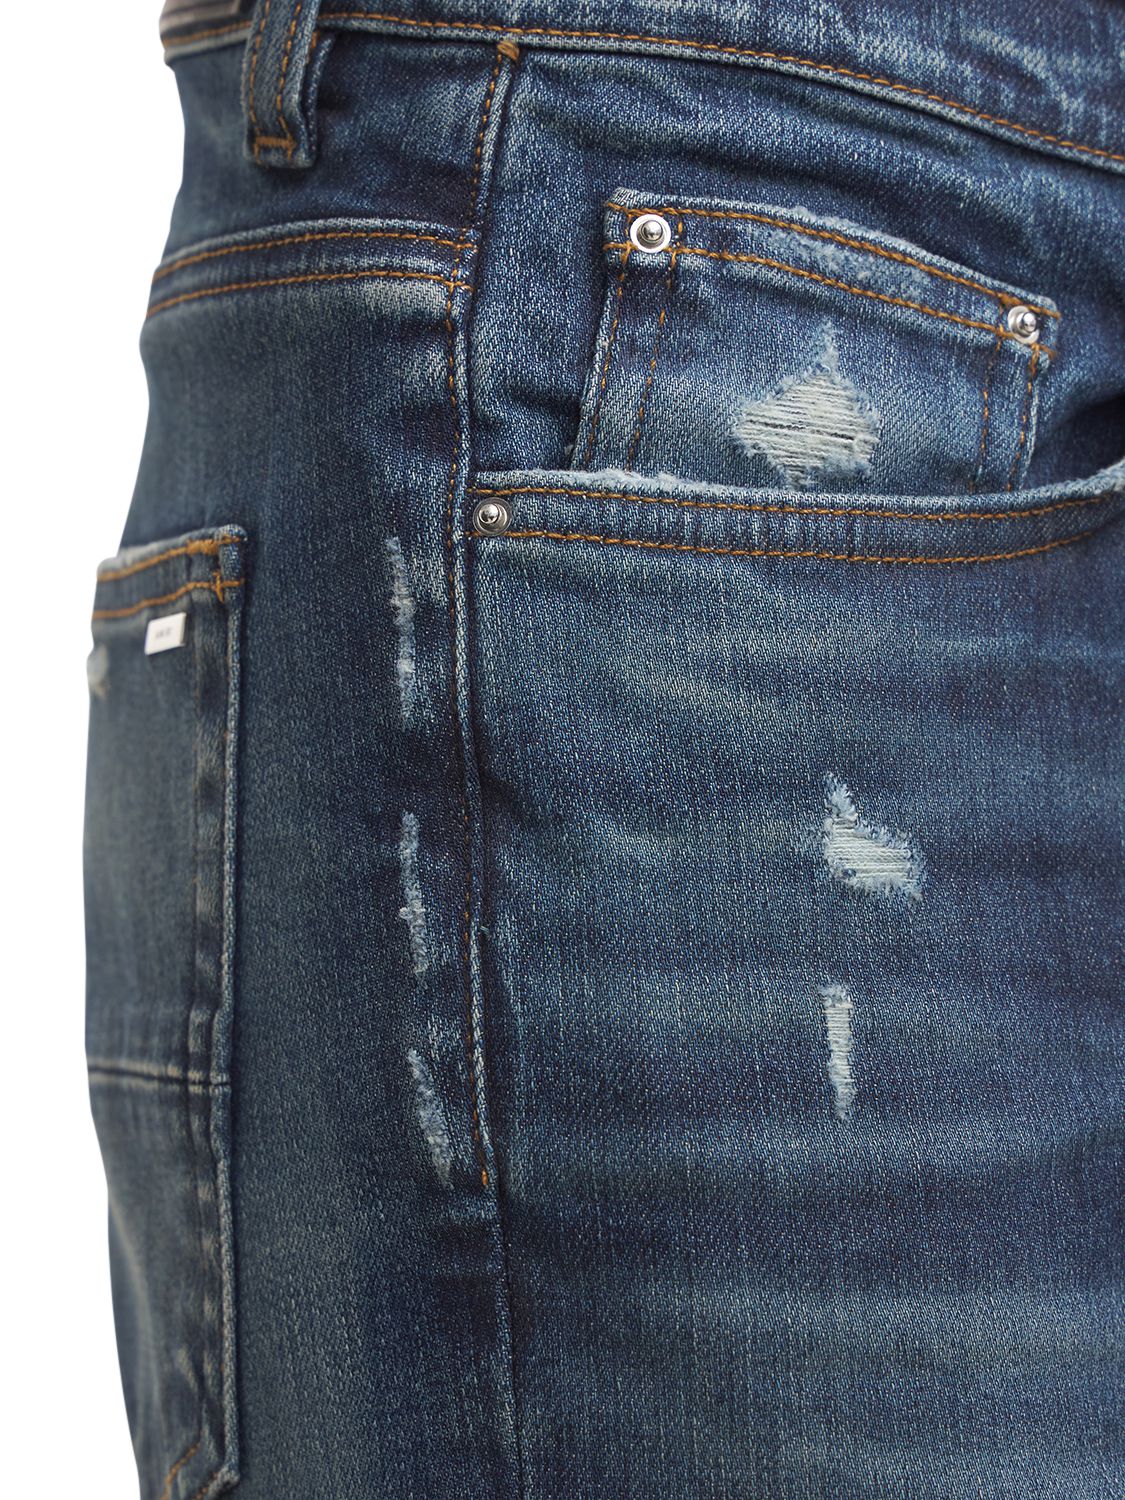 Shop Amiri 15cm Stack Cotton Denim Jeans In Deep Indigo